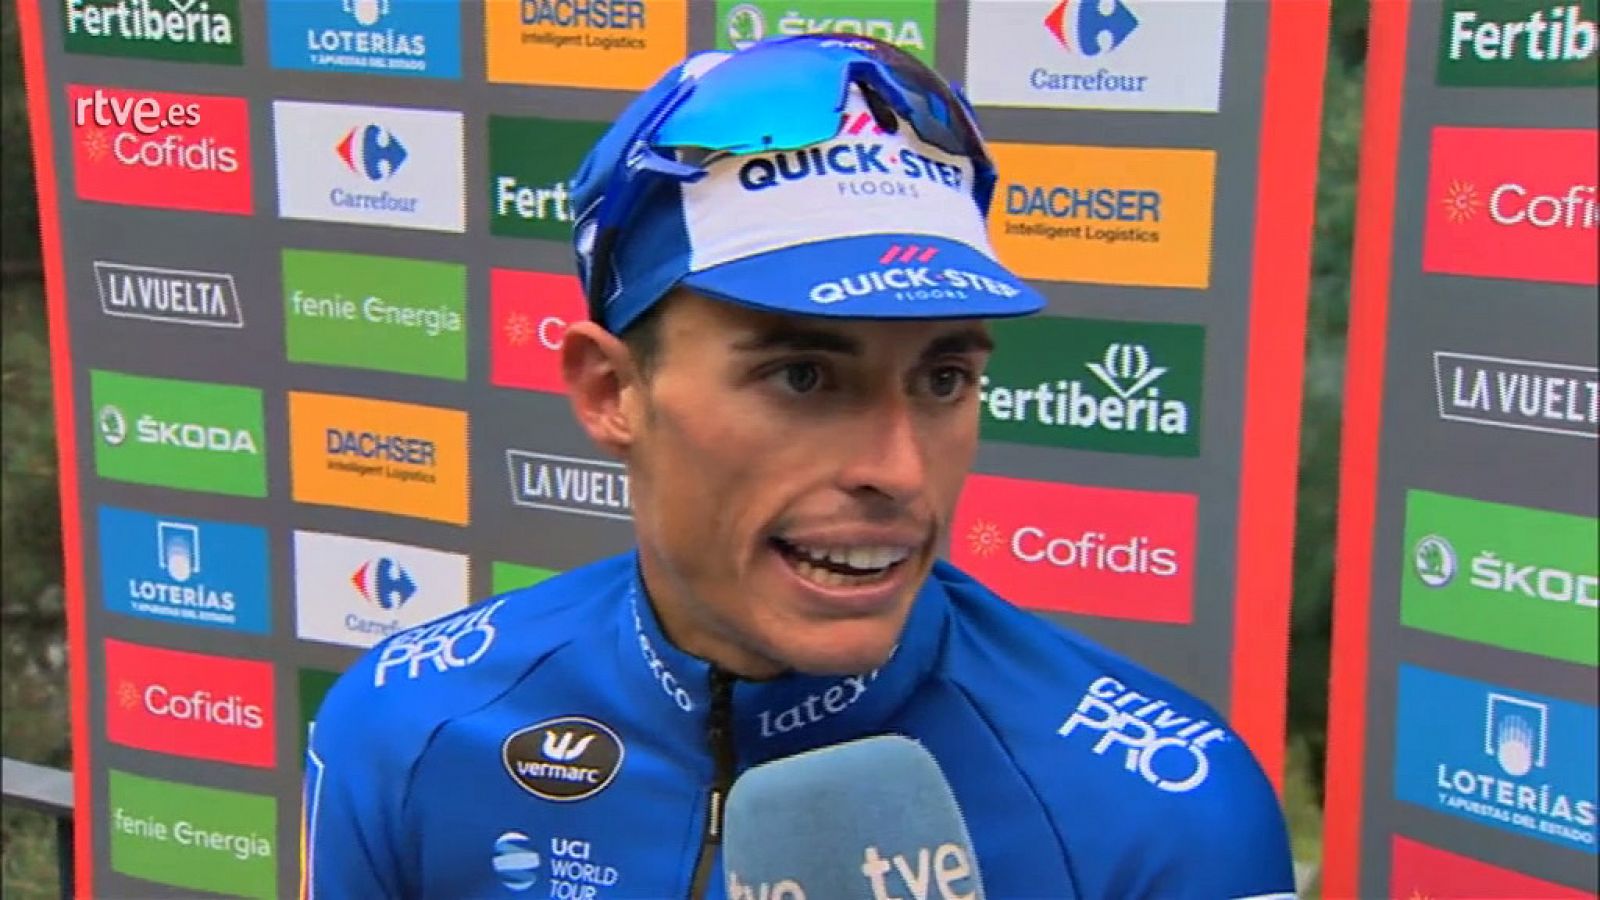 El ciclista español Enric Mas (Quick-Step Floors) no quiere compararse con Alberto Contador después de certificar la segunda plaza en la clasificación general de la Vuelta a España 2018 tras su triunfo en la penúltima etapa, en La Gallina, y aseguró 